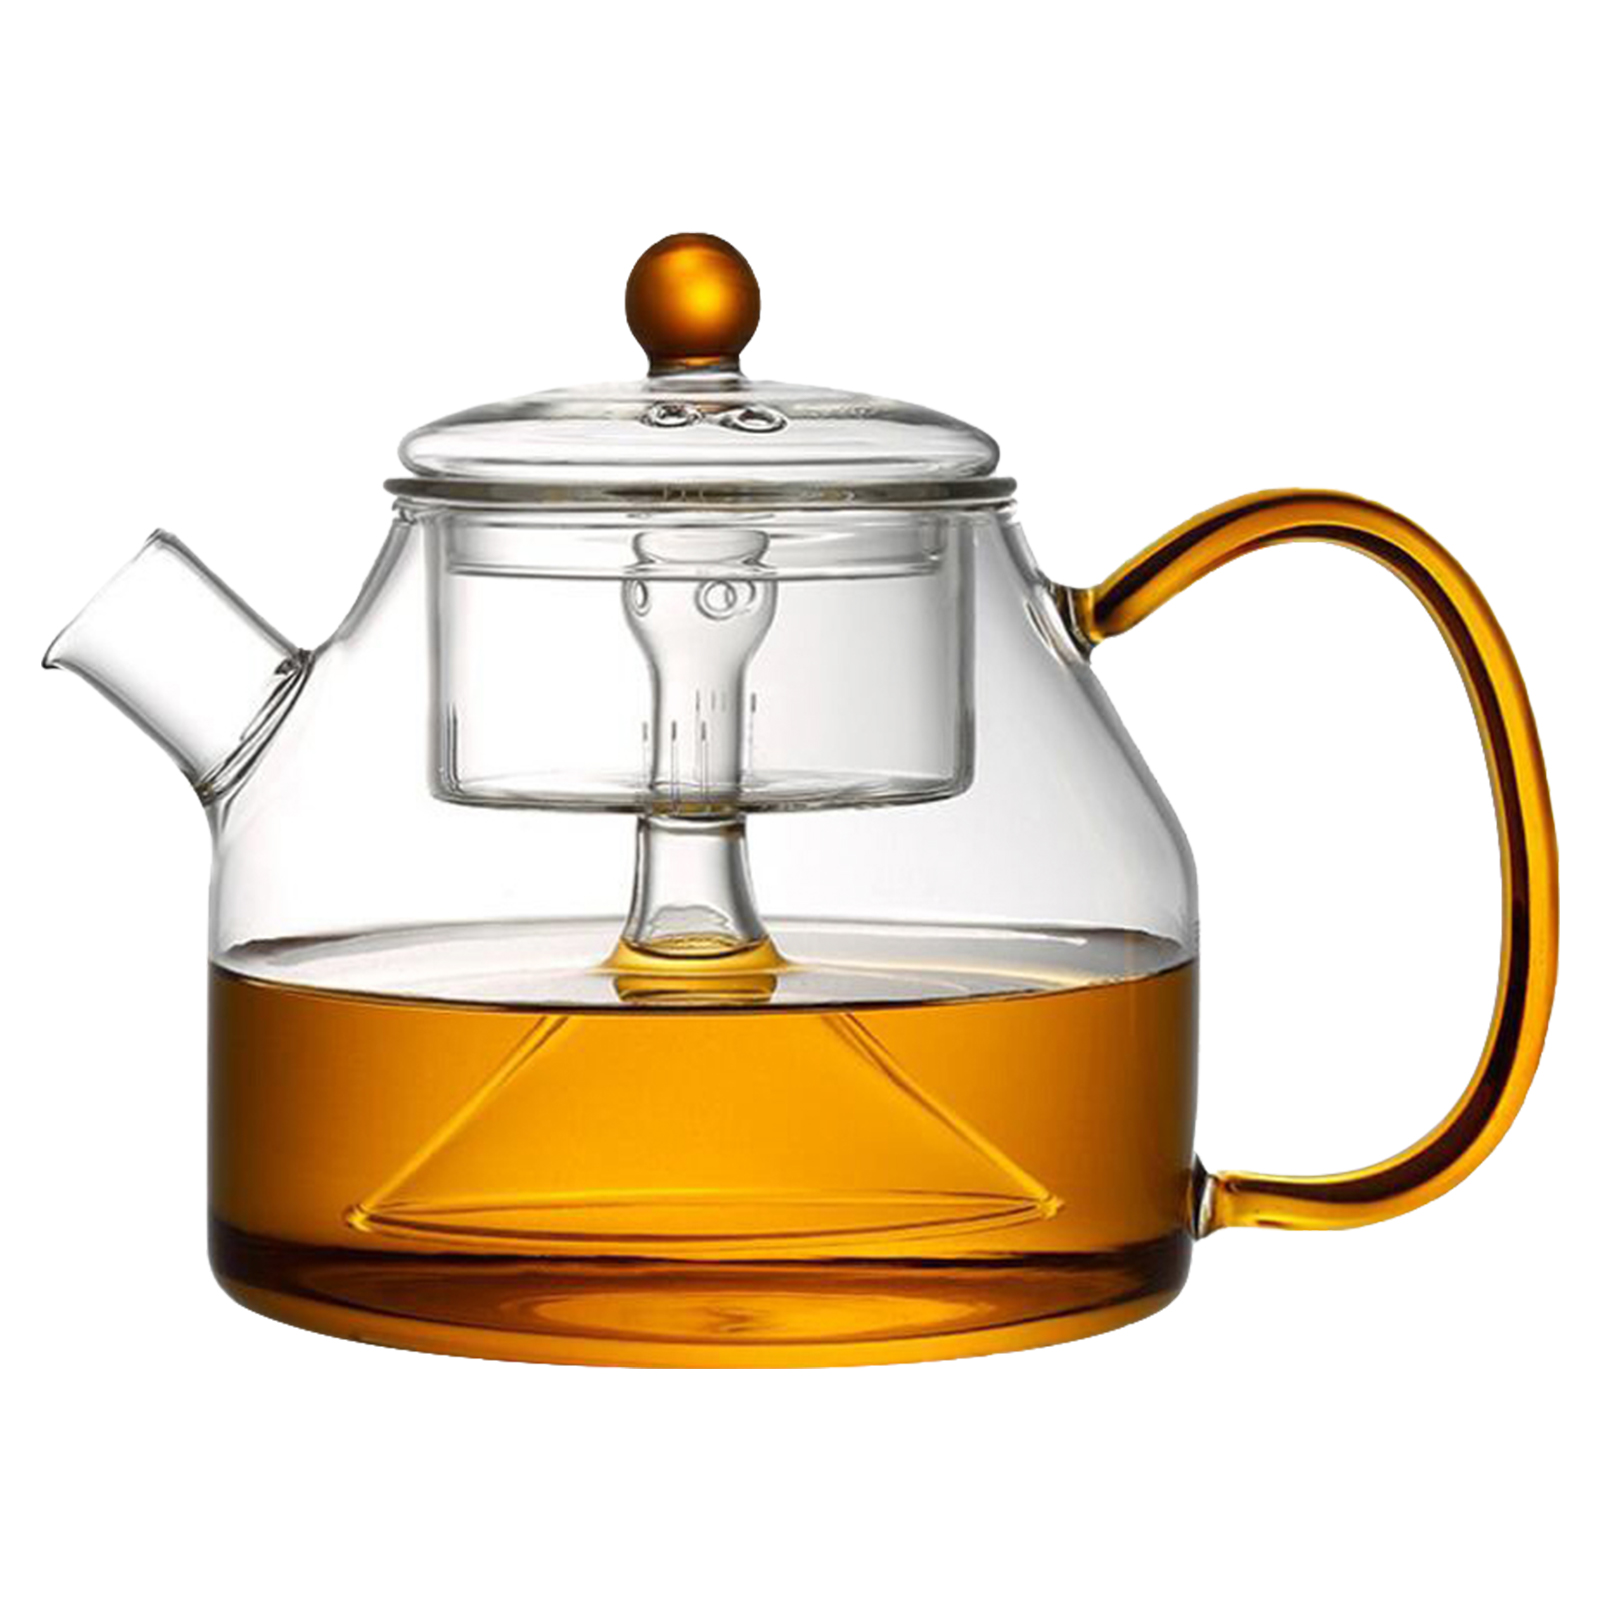 фото Чайник с фильтром пропаривания чая, 1200 мл, 16х13 см, marma mm-tpt-15